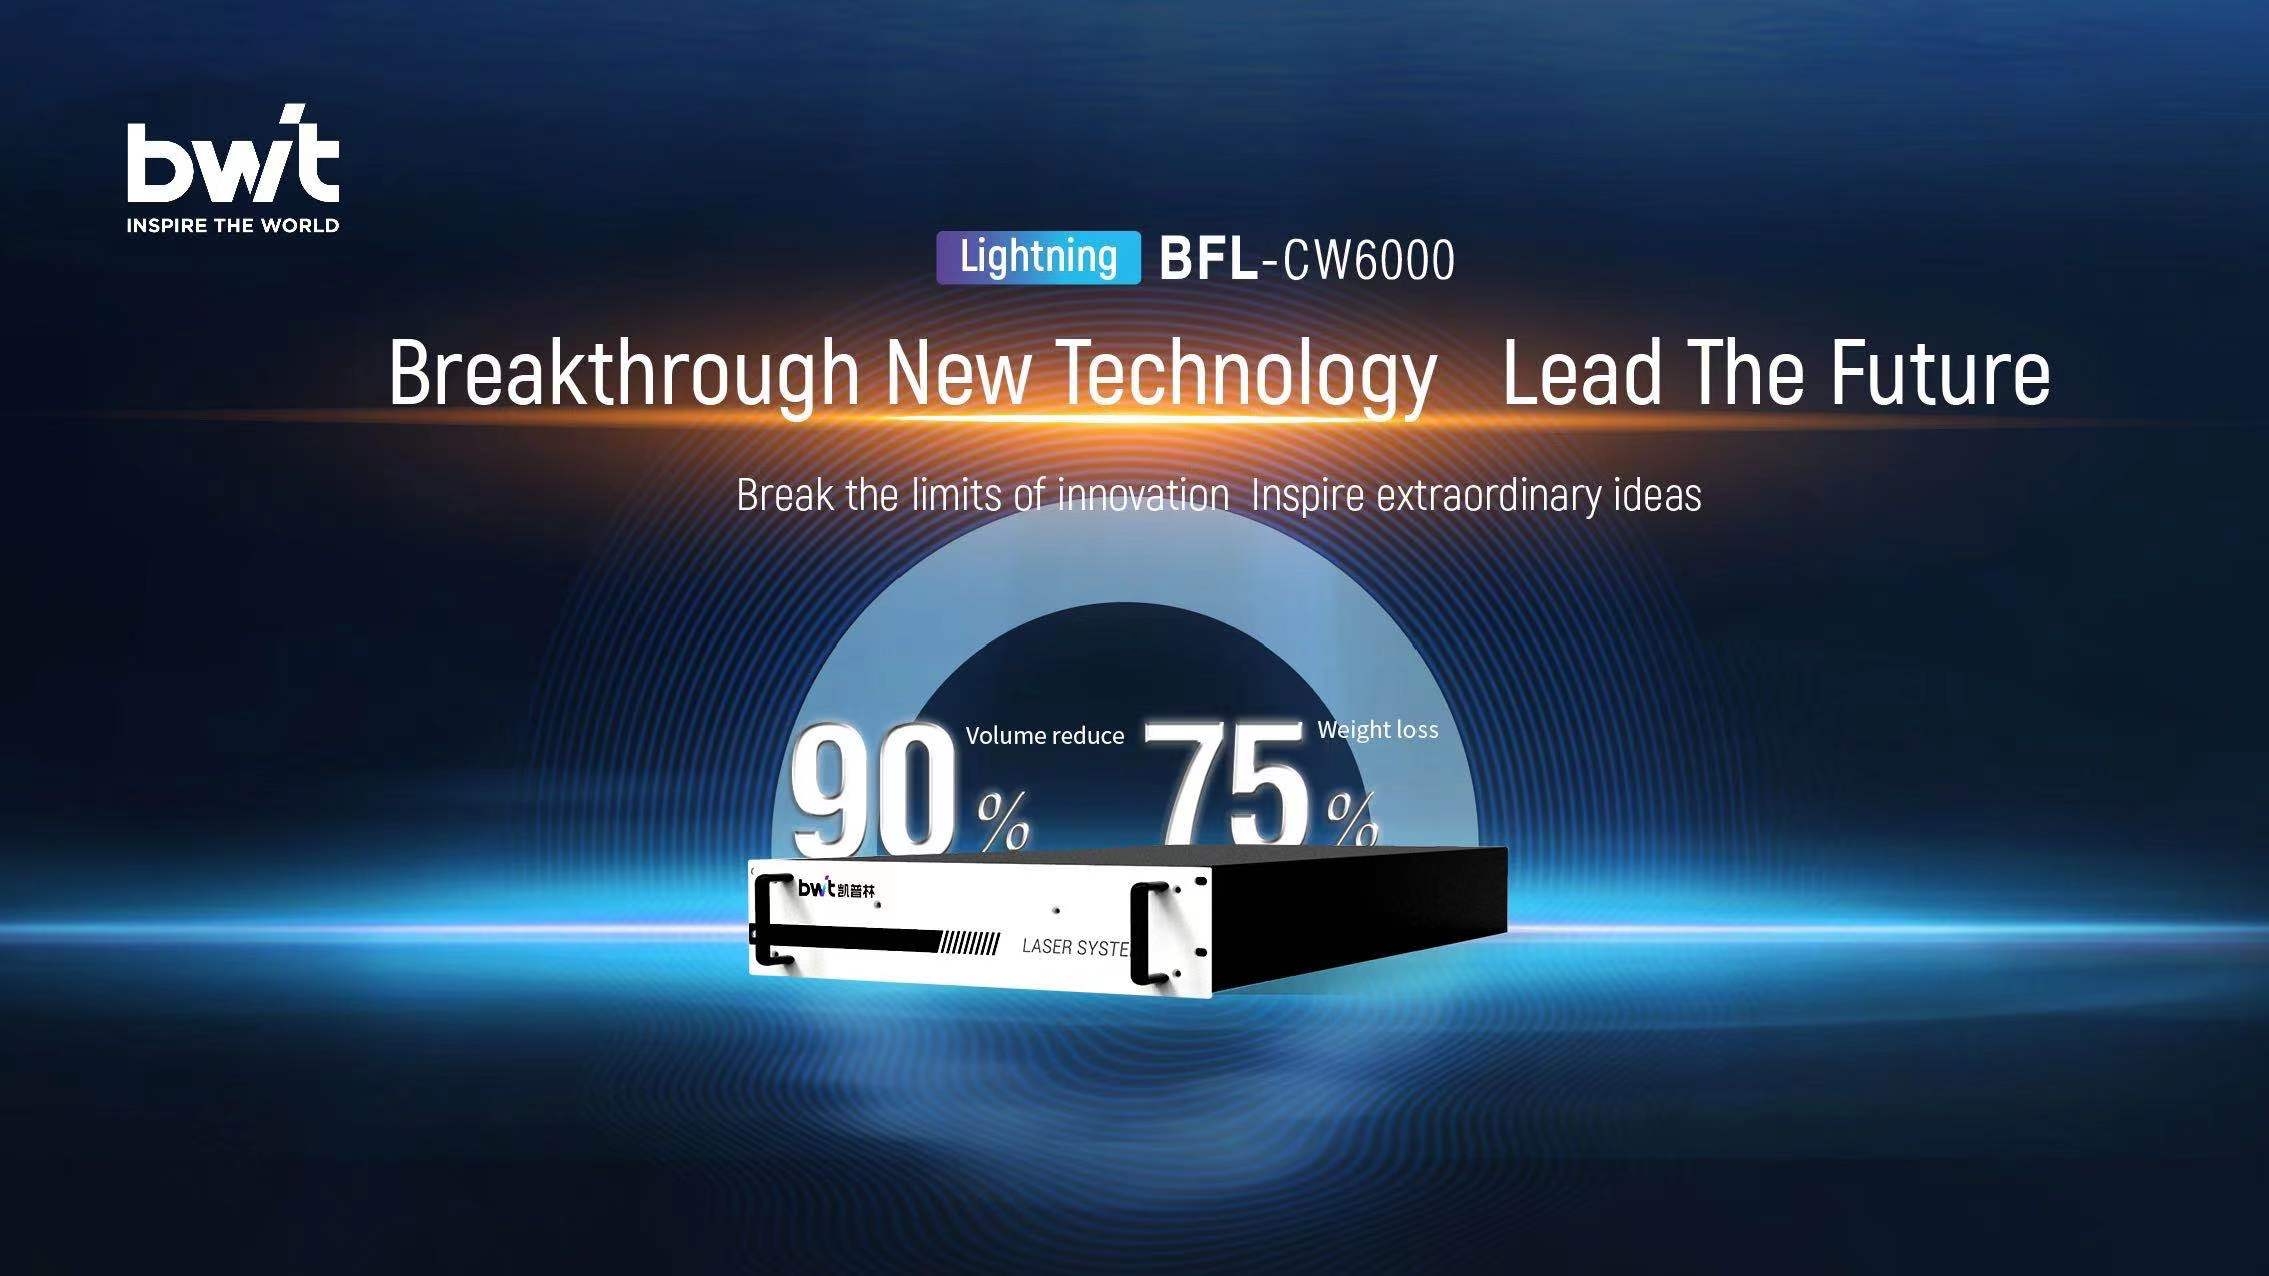 BWT ra mắt tia laser sợi quang Lightning 6000W |Nhỏ hơn, nhẹ hơn và thông minh hơn